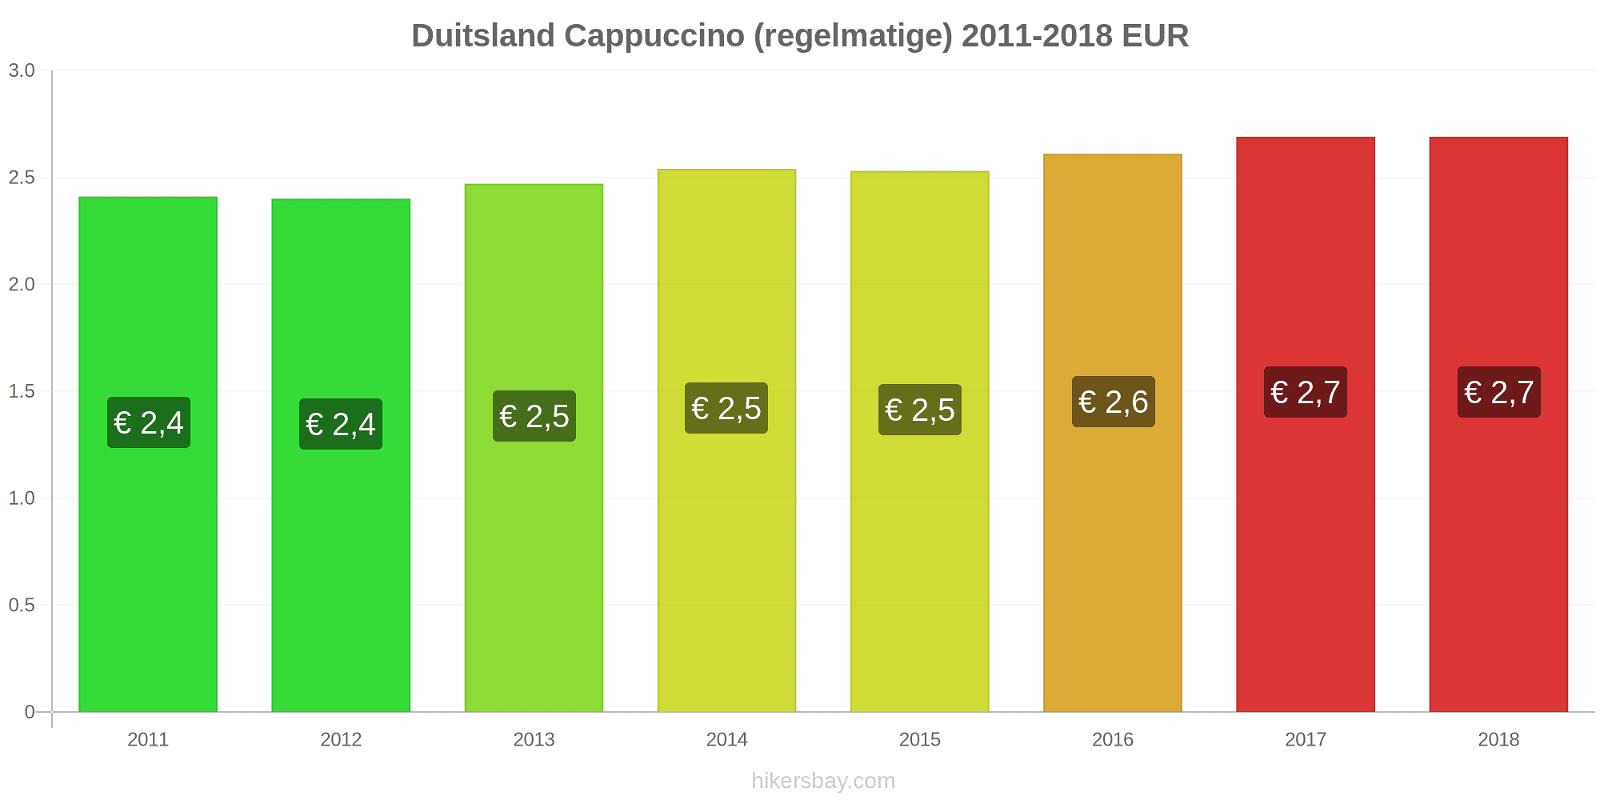 Duitsland prijswijzigingen Cappuccino (regulier) hikersbay.com